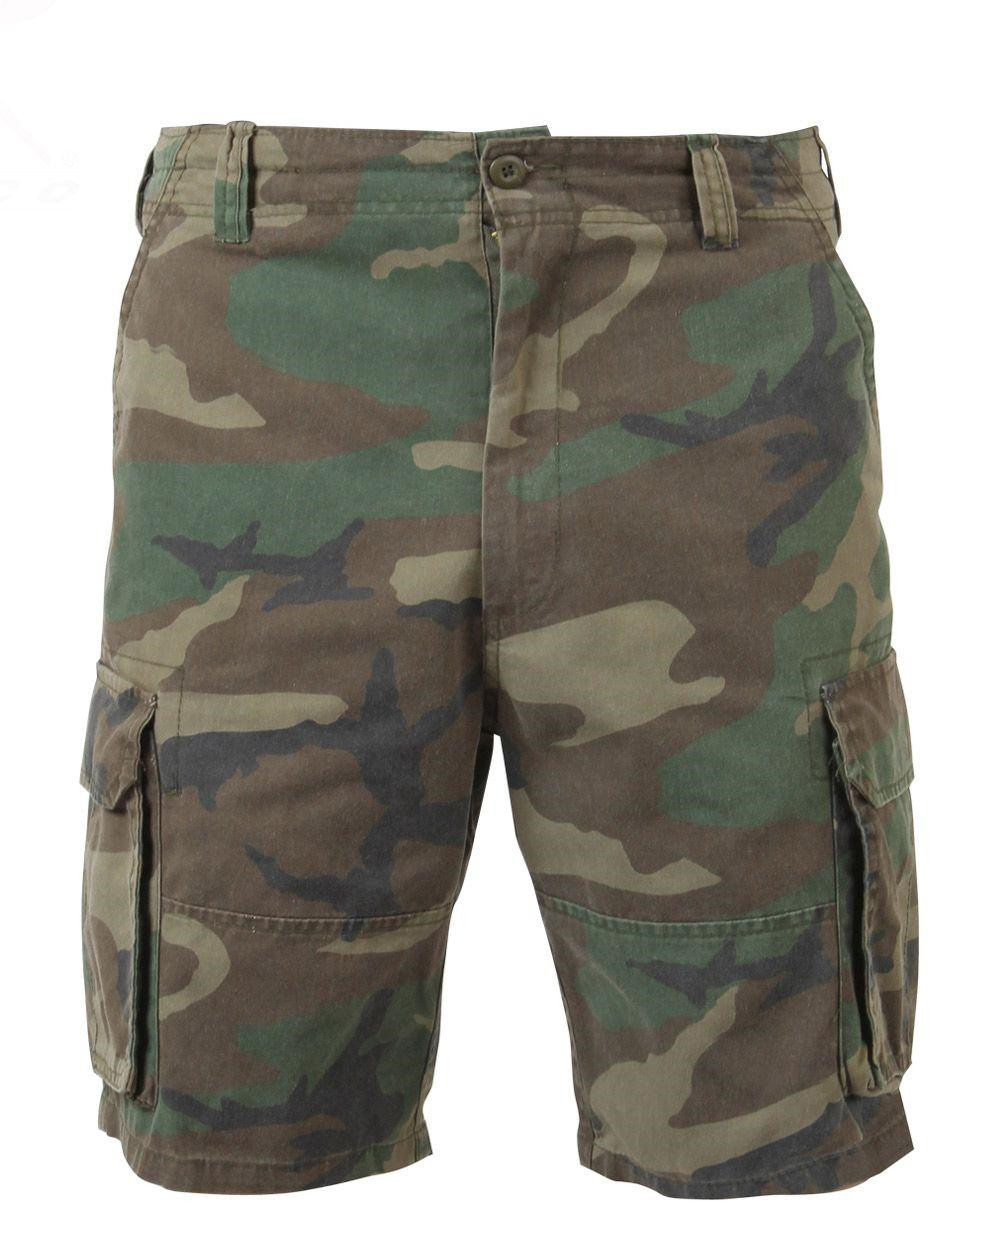 Rothco Cargo shorts (Woodland, L)